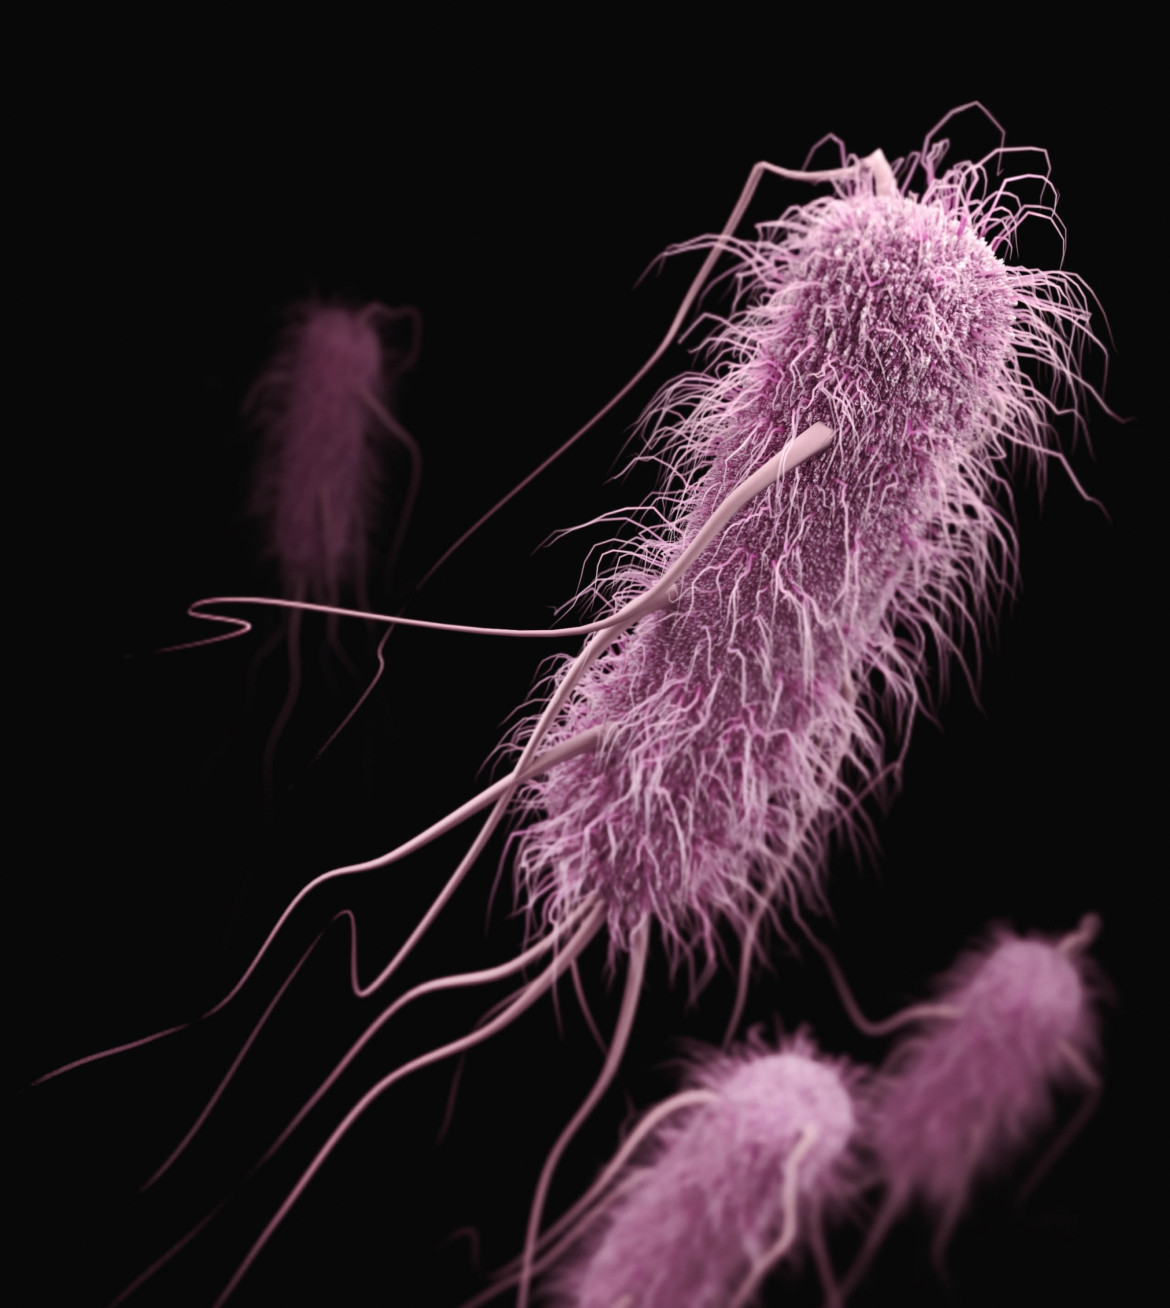 Pueden pasar más de 3 días desde el momento en que la bacteria Escherichia coli infecta al organismo y se desarrollen los síntomas de síndrome urémico hemolítico. Foto Unsplash.